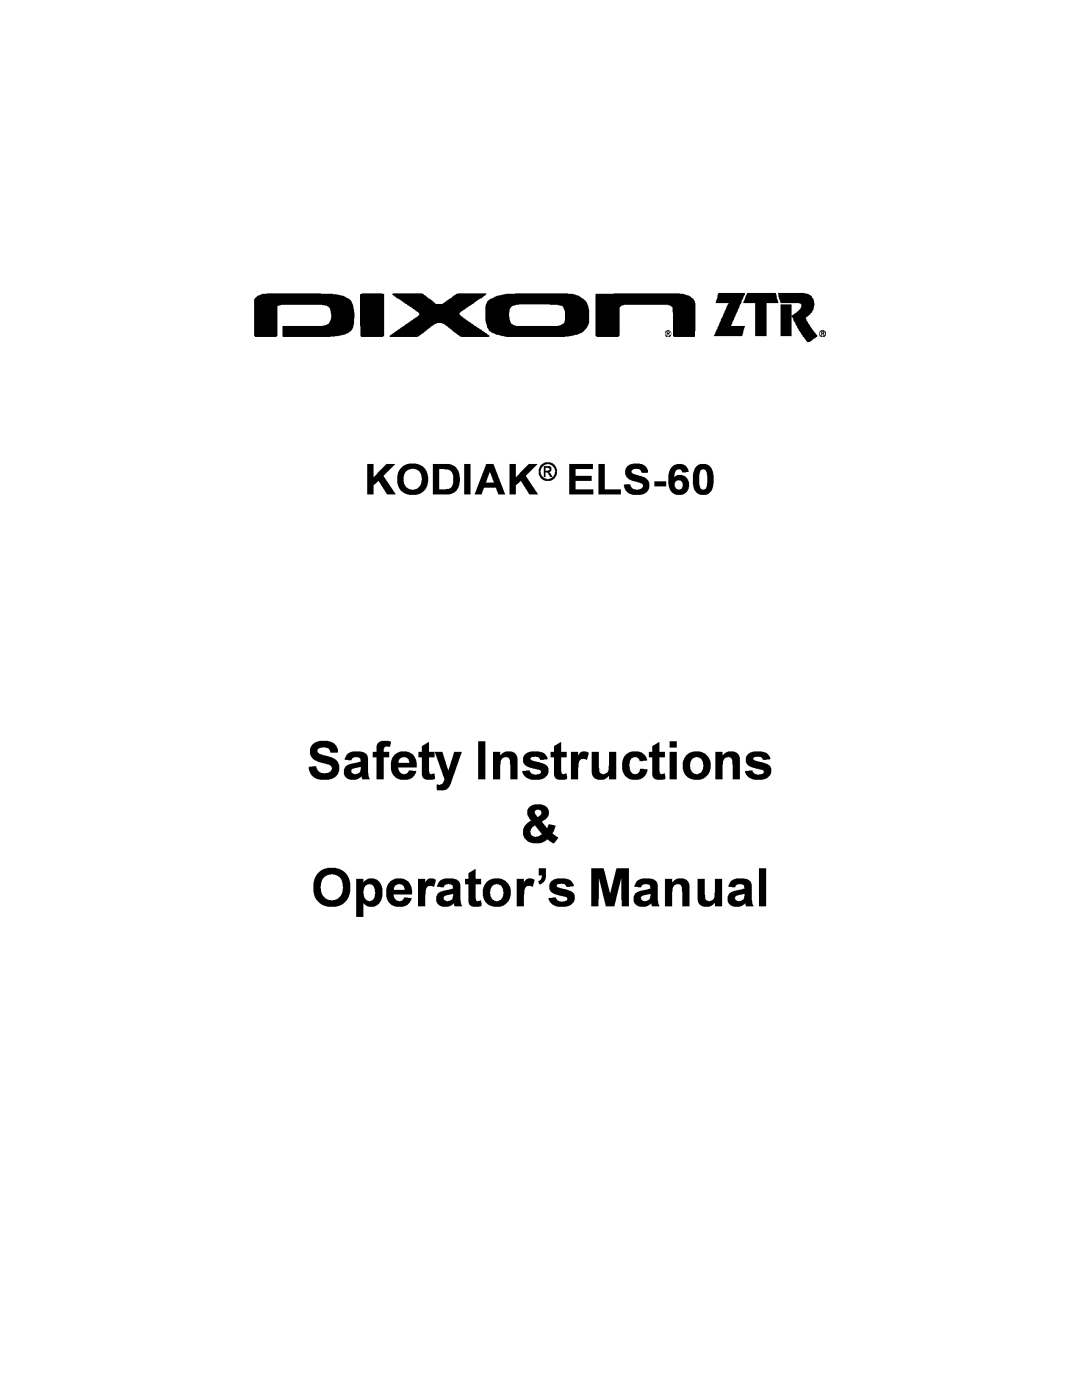 Dixon ELS 60 manual Safety Instructions, Operator’s Manual, KODIAK ELS-60 